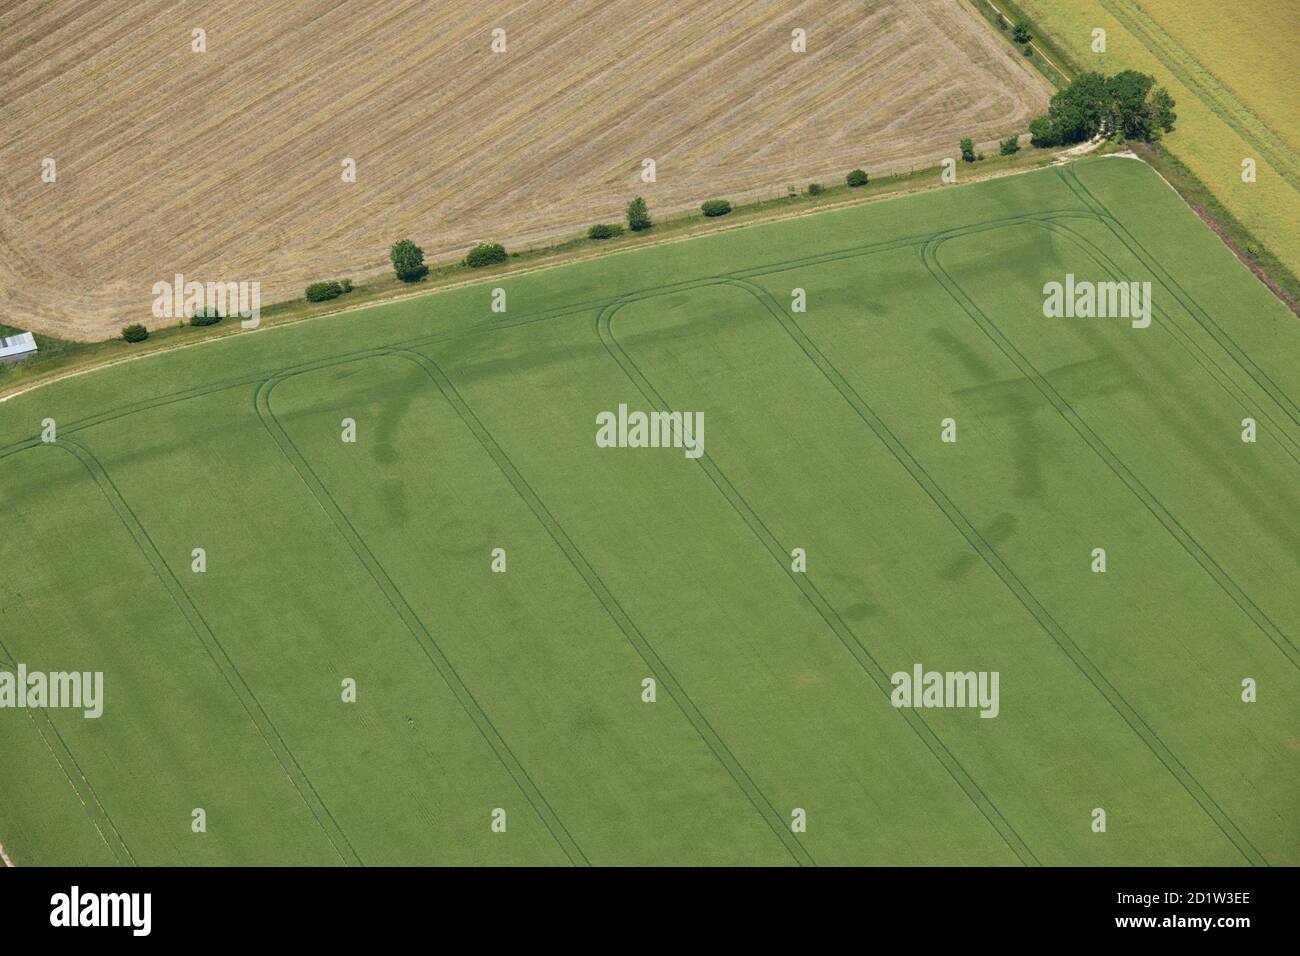 Eine spätere prähistorische kreisförmige causewayed Gehäuse oder Henge, in der Nähe von New Farm, Cambridgeshire, 2014. Luftaufnahme. Stockfoto